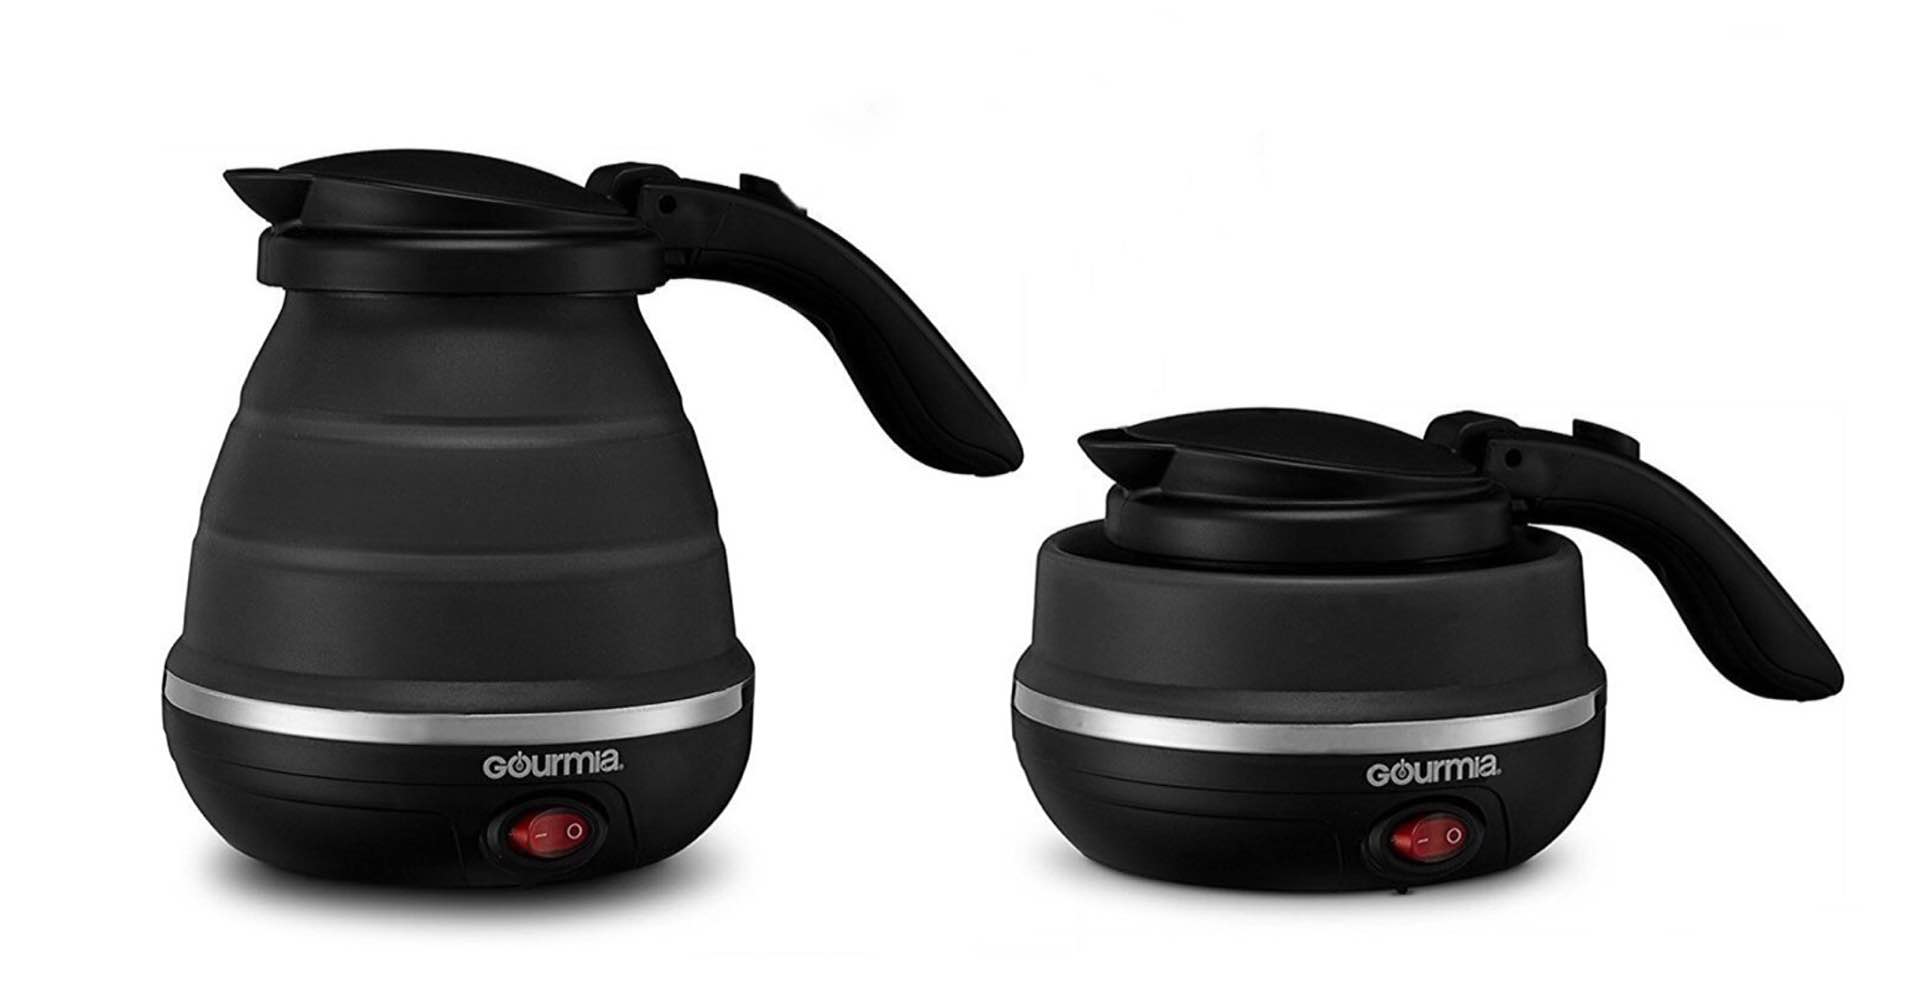 Gourmia foldable travel kettle. ($28 for black, $25 for white)